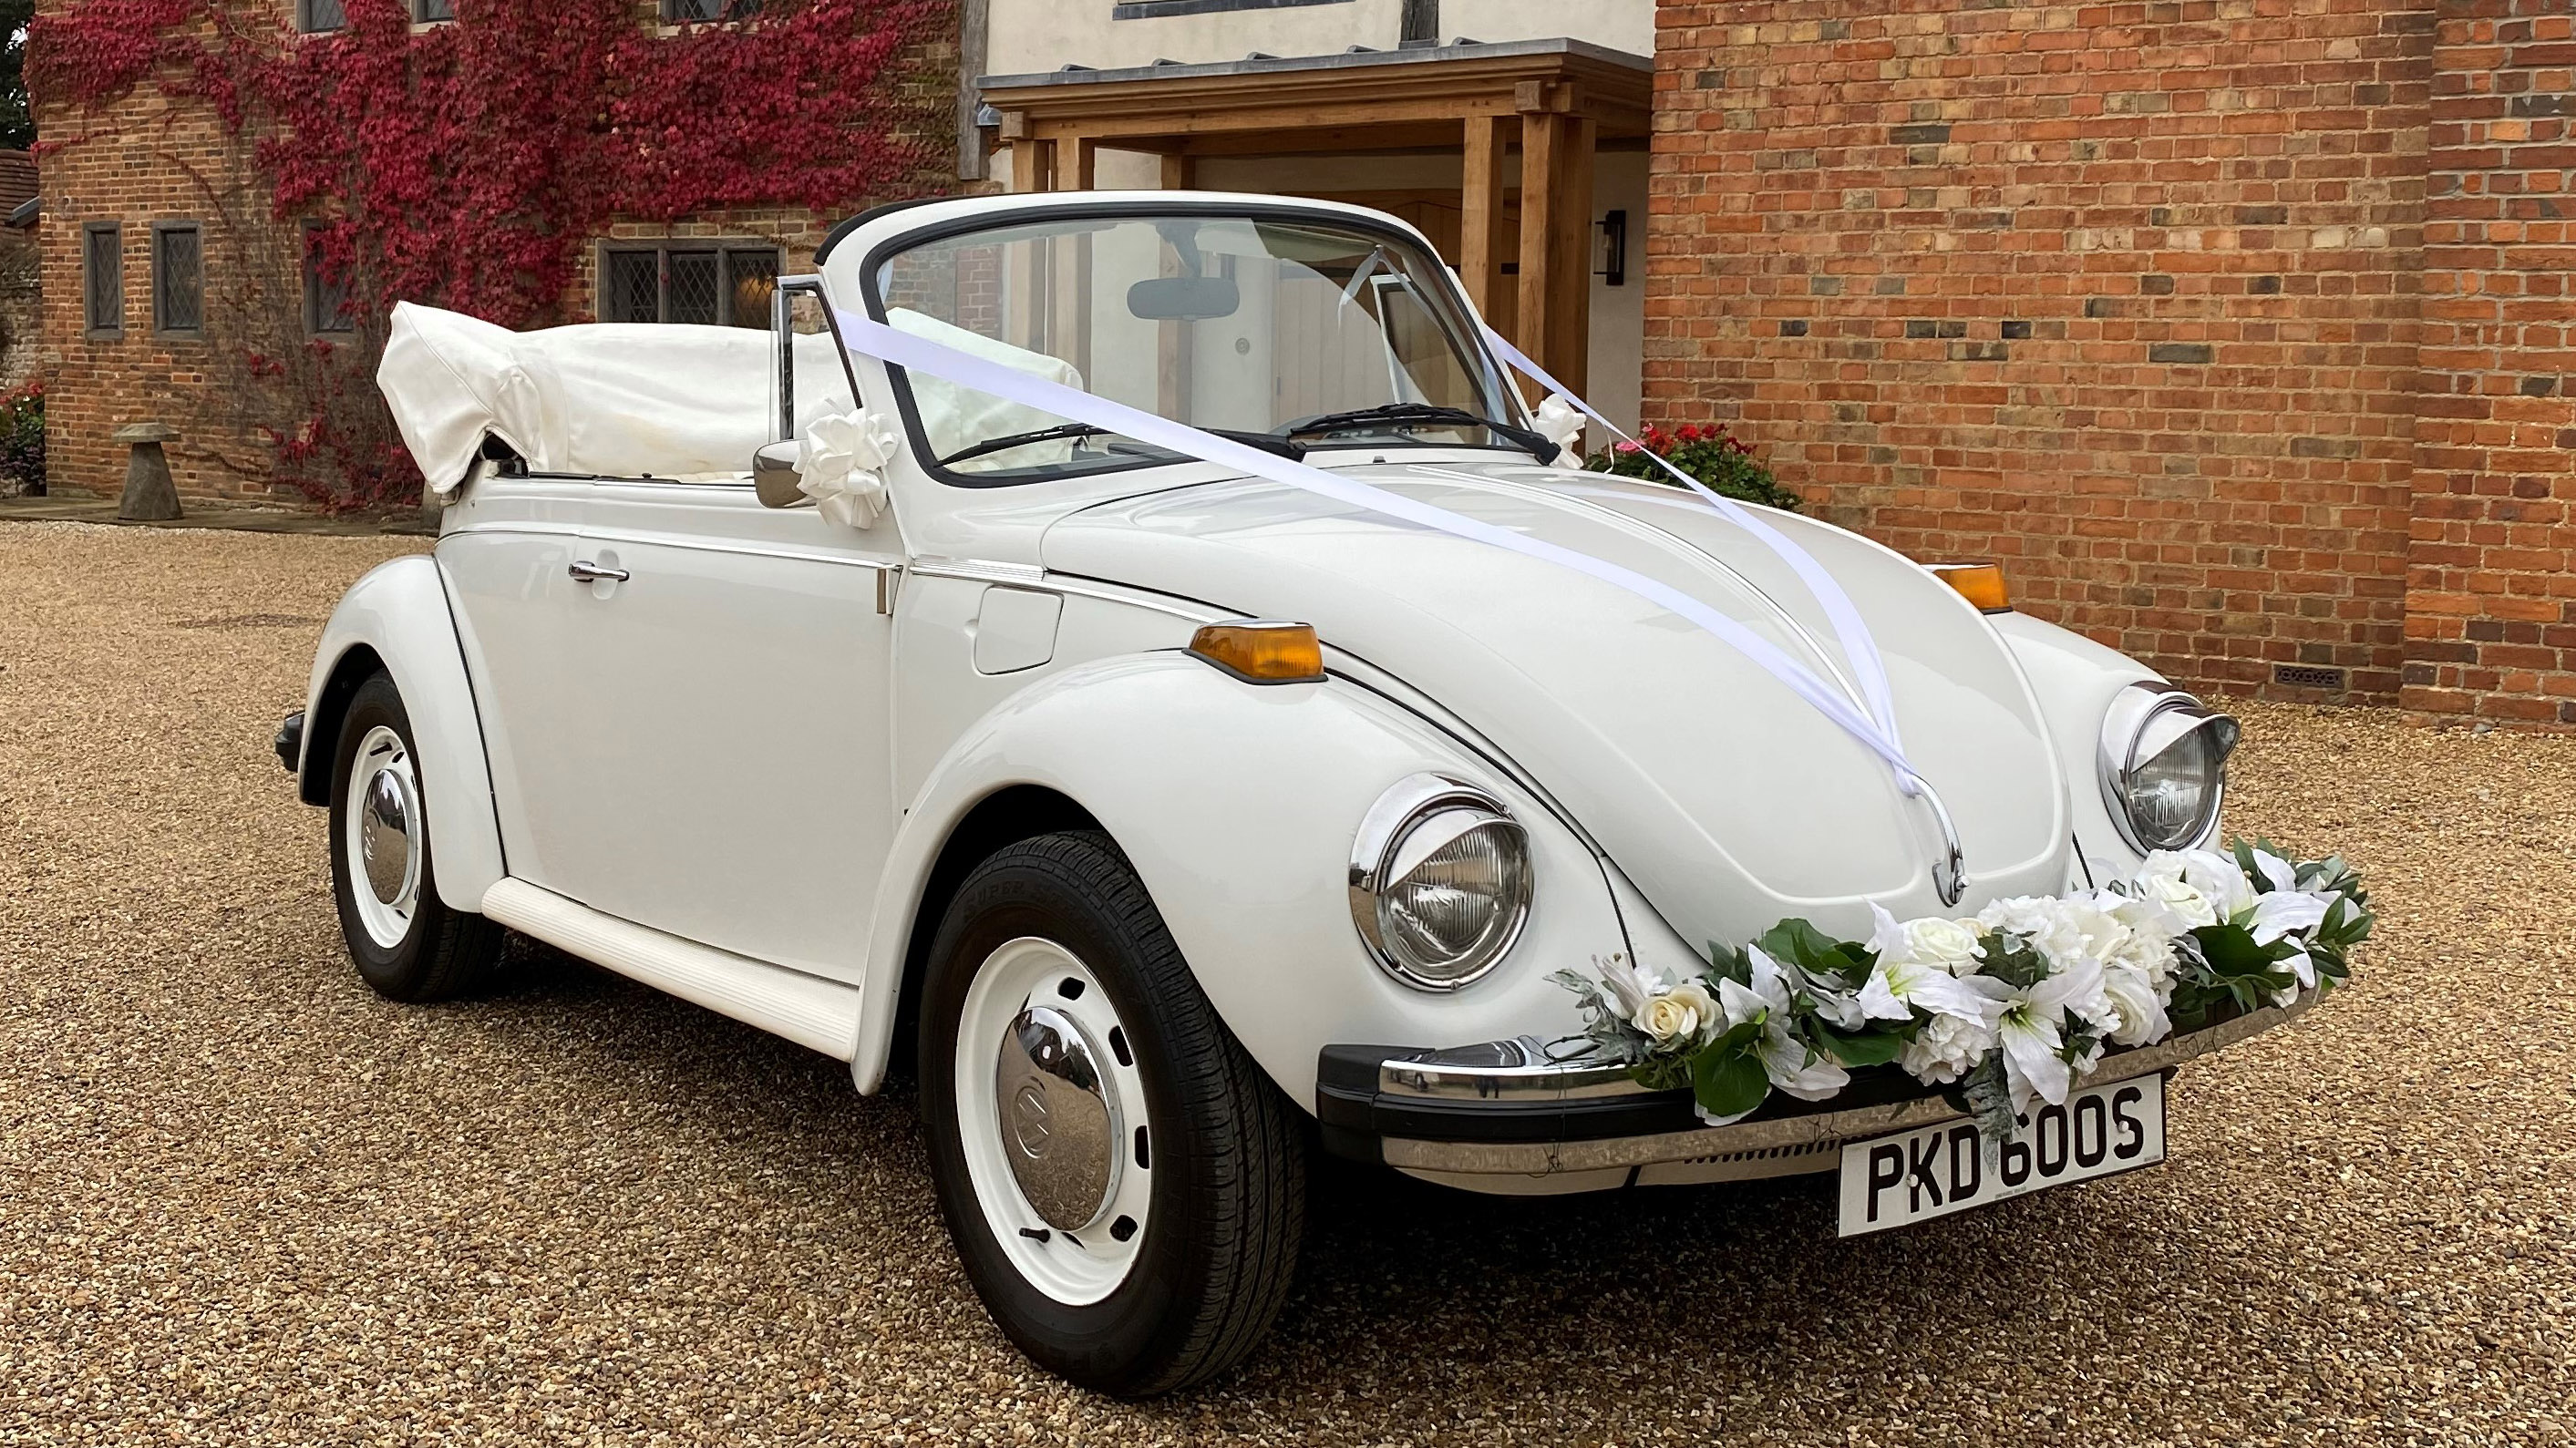 Volkswagen Beetle Convertible wedding car for hire in Bracknell, Berkshire